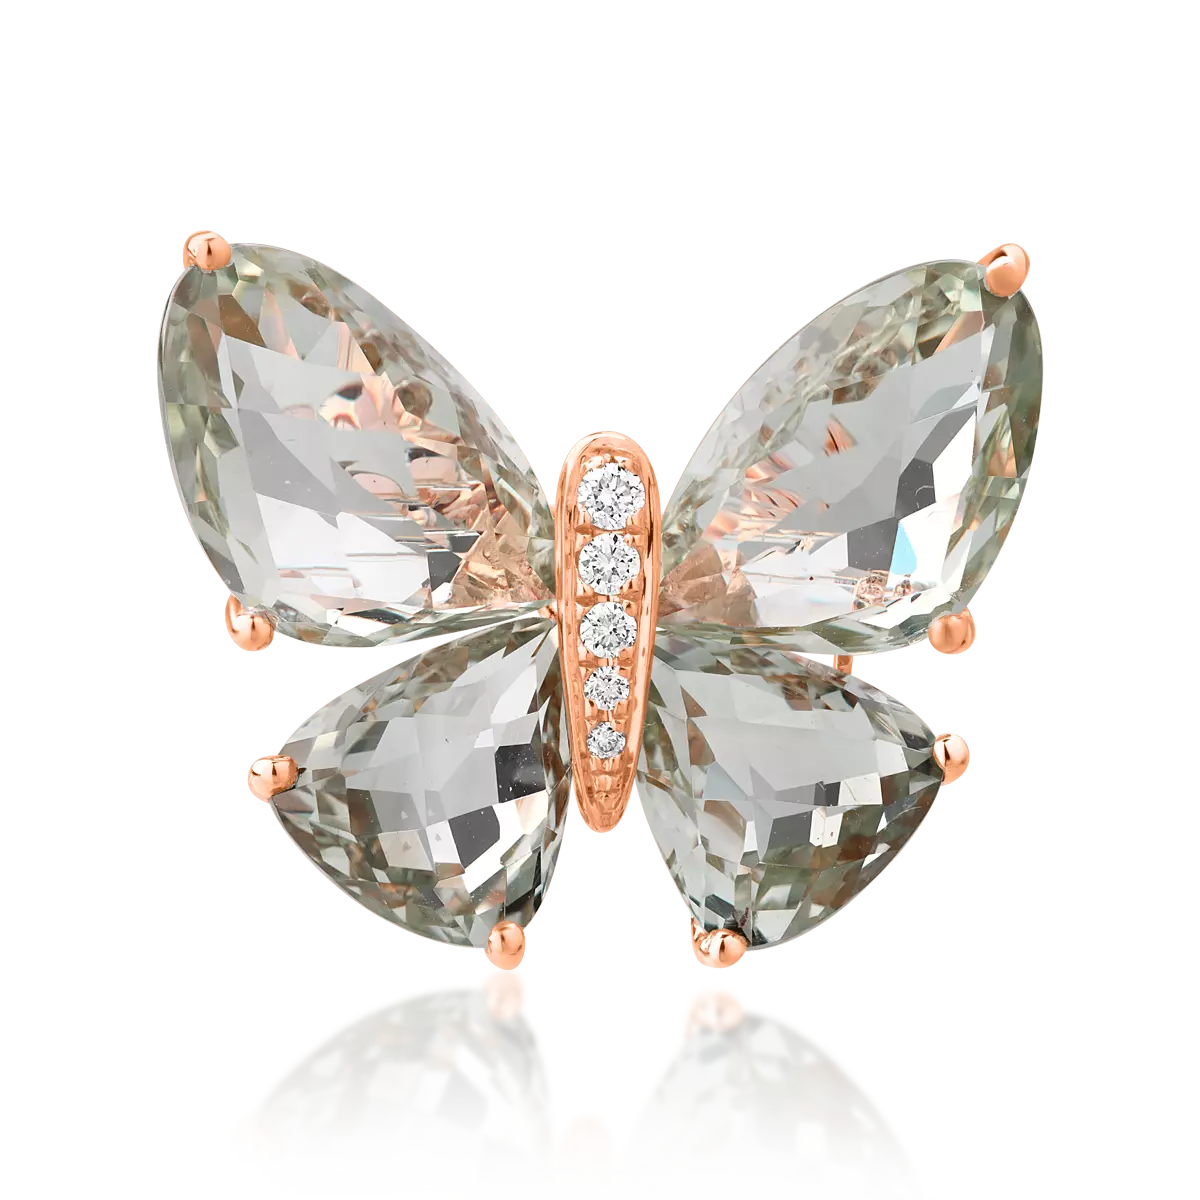 Rózsarany pillangós bross 11.6ct zöld ametiszttel és 0.07ct gyémántokkal